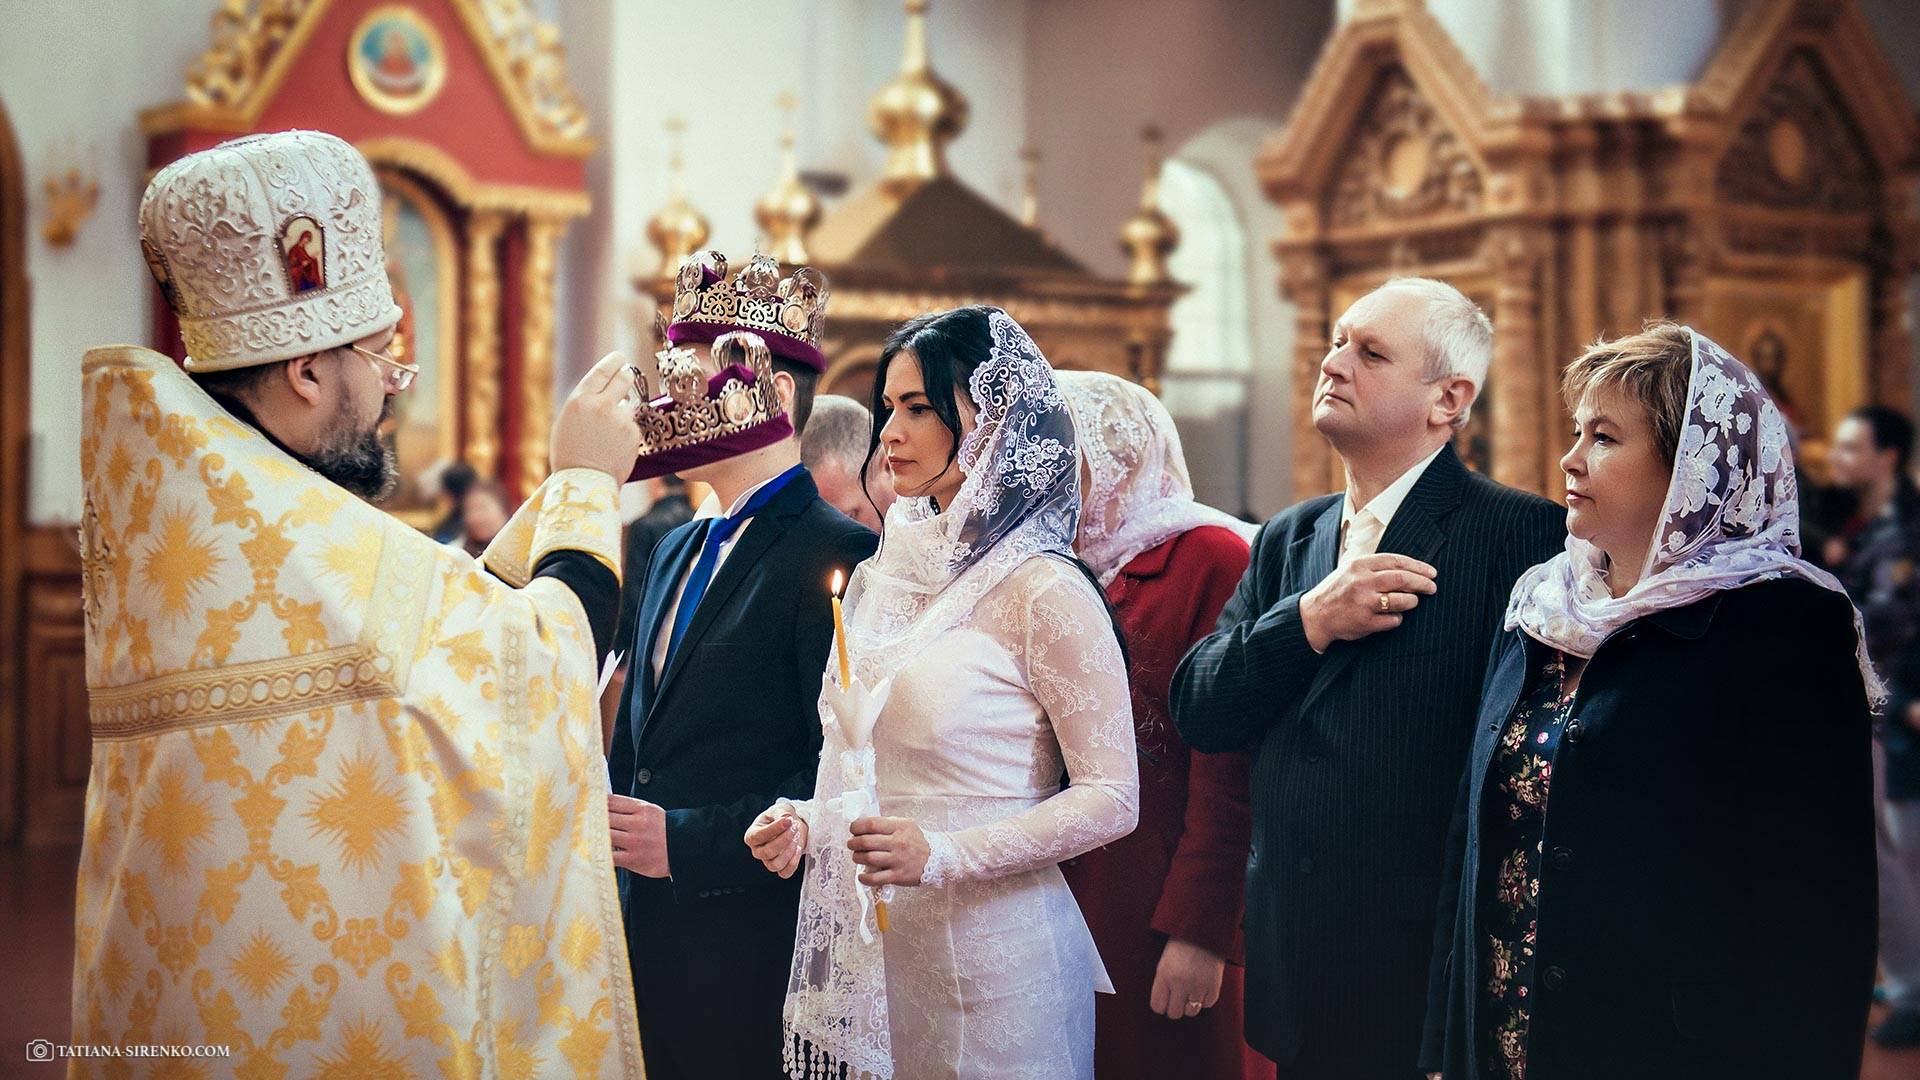 Что нужно знать про правила венчания в церкви в россии: дресс-код, подготовка, атрибуты